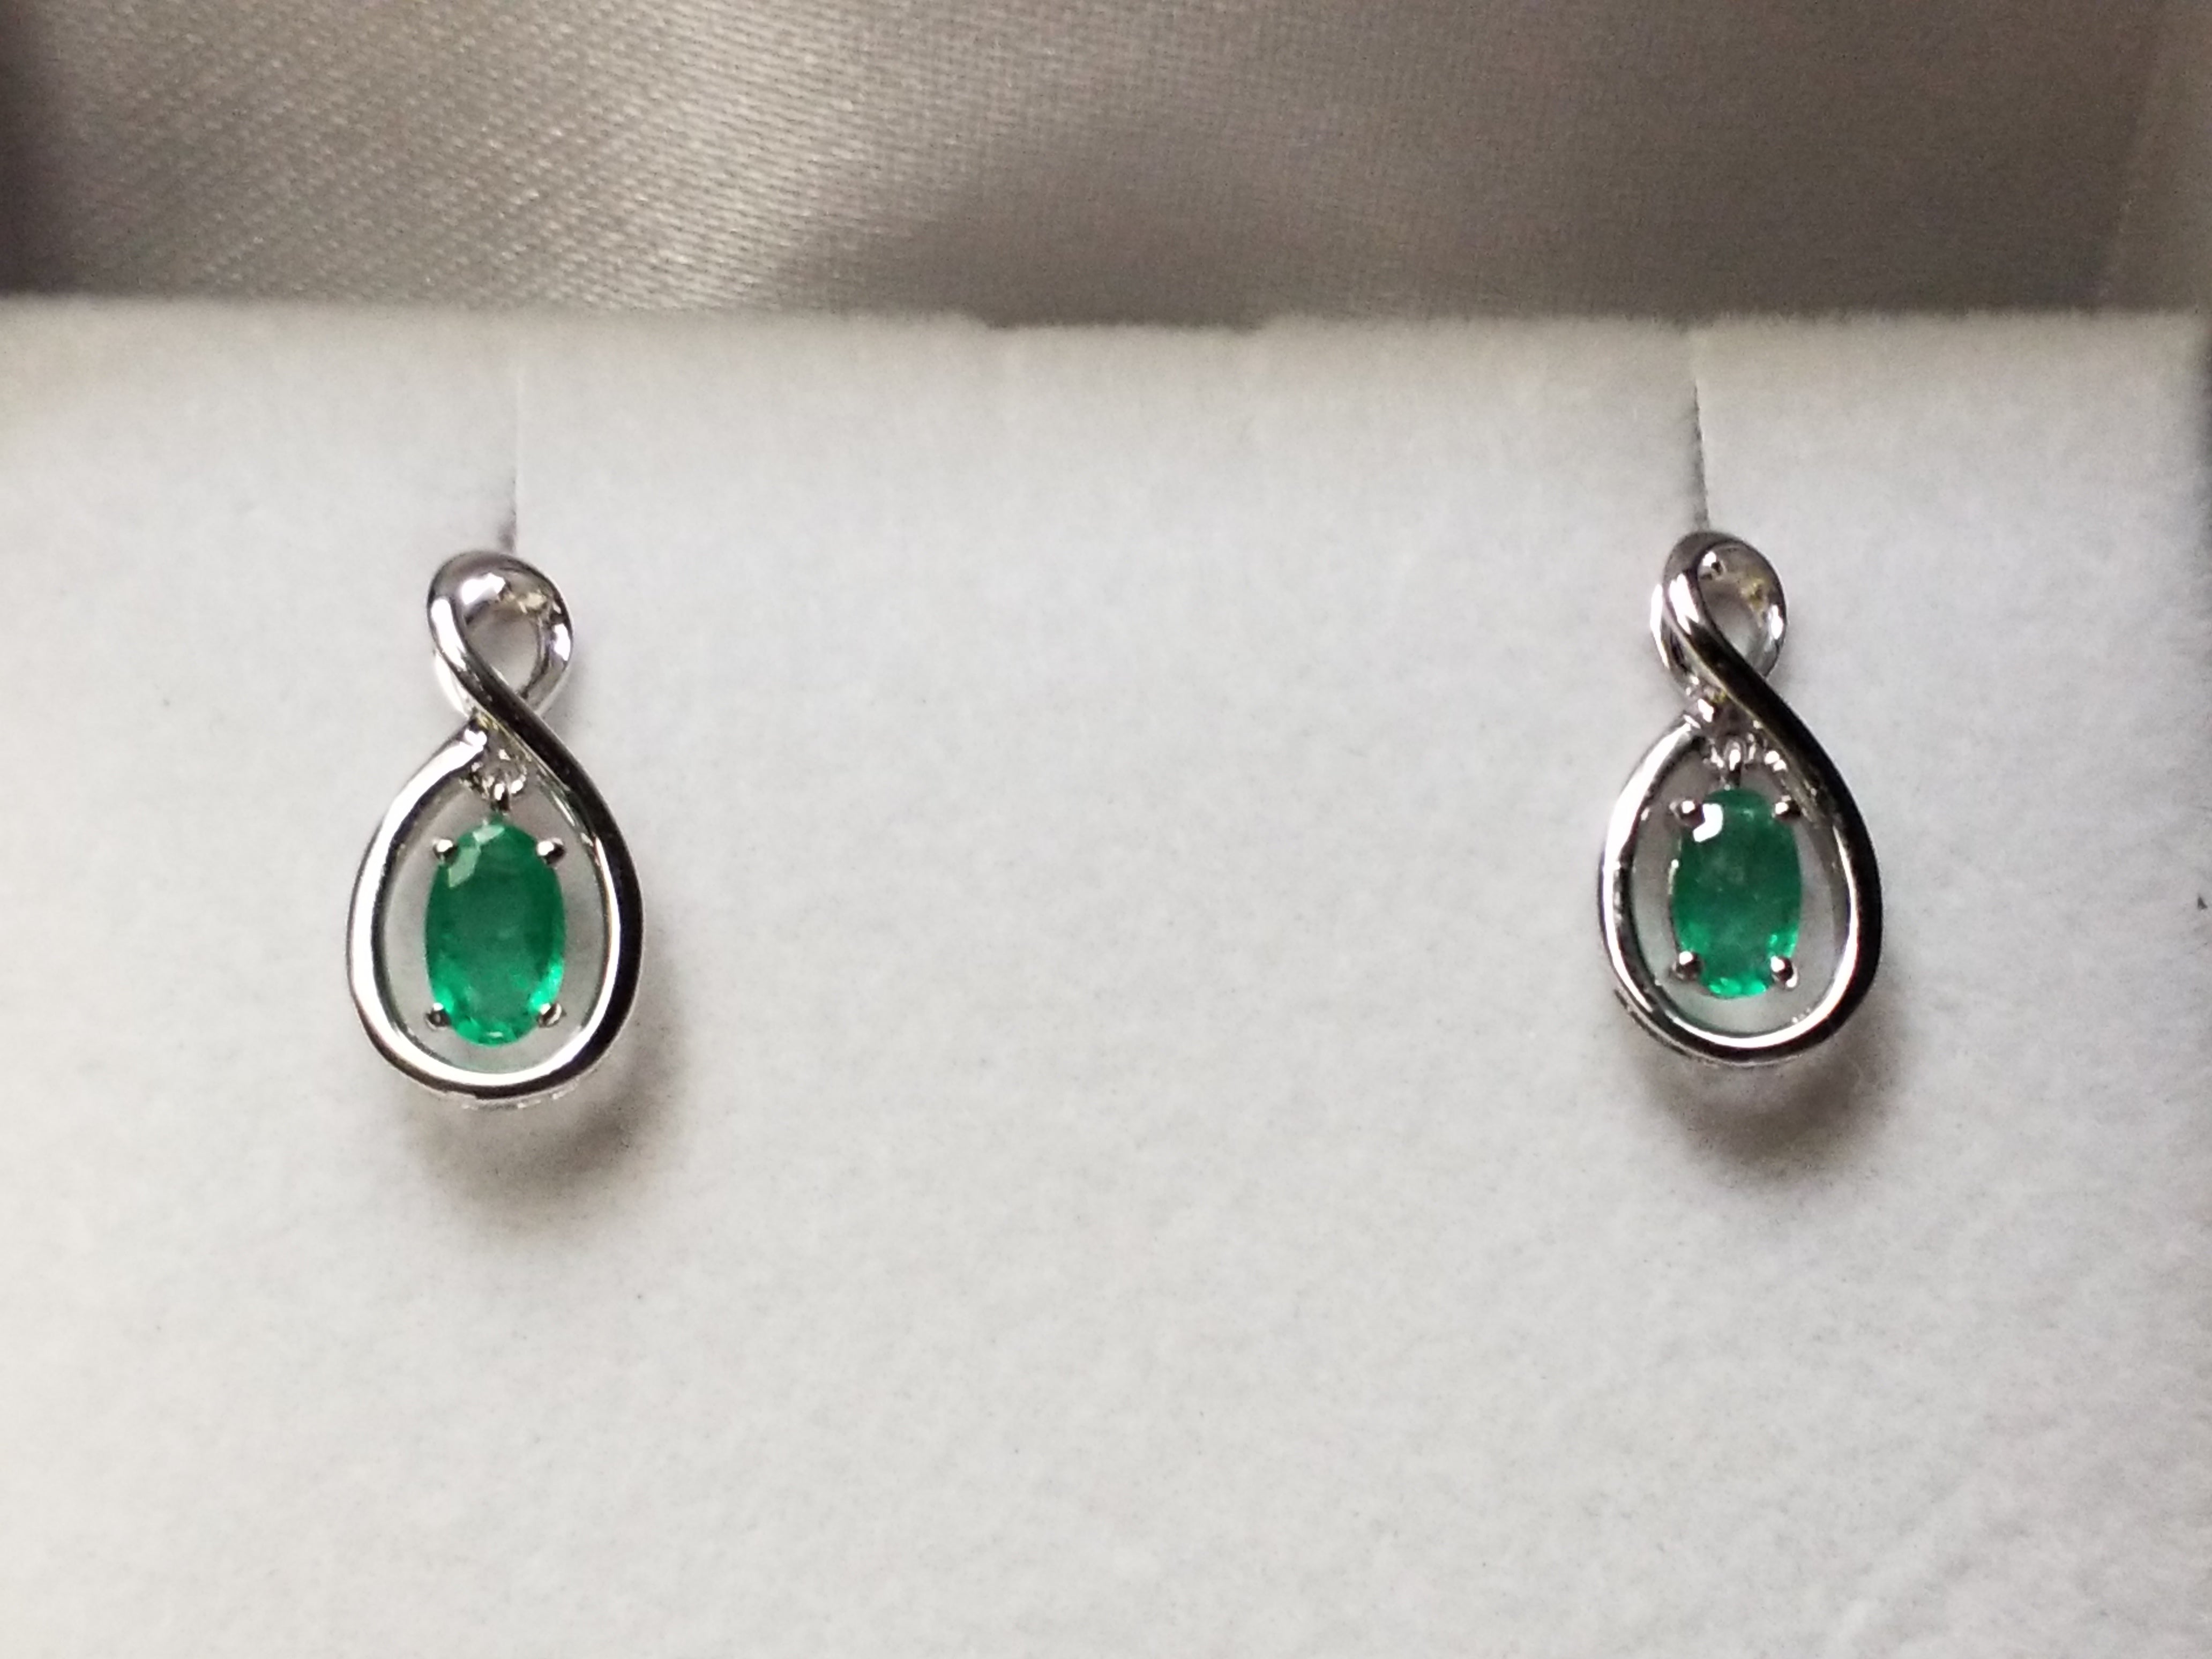 Oval Cut Emerald Earrings